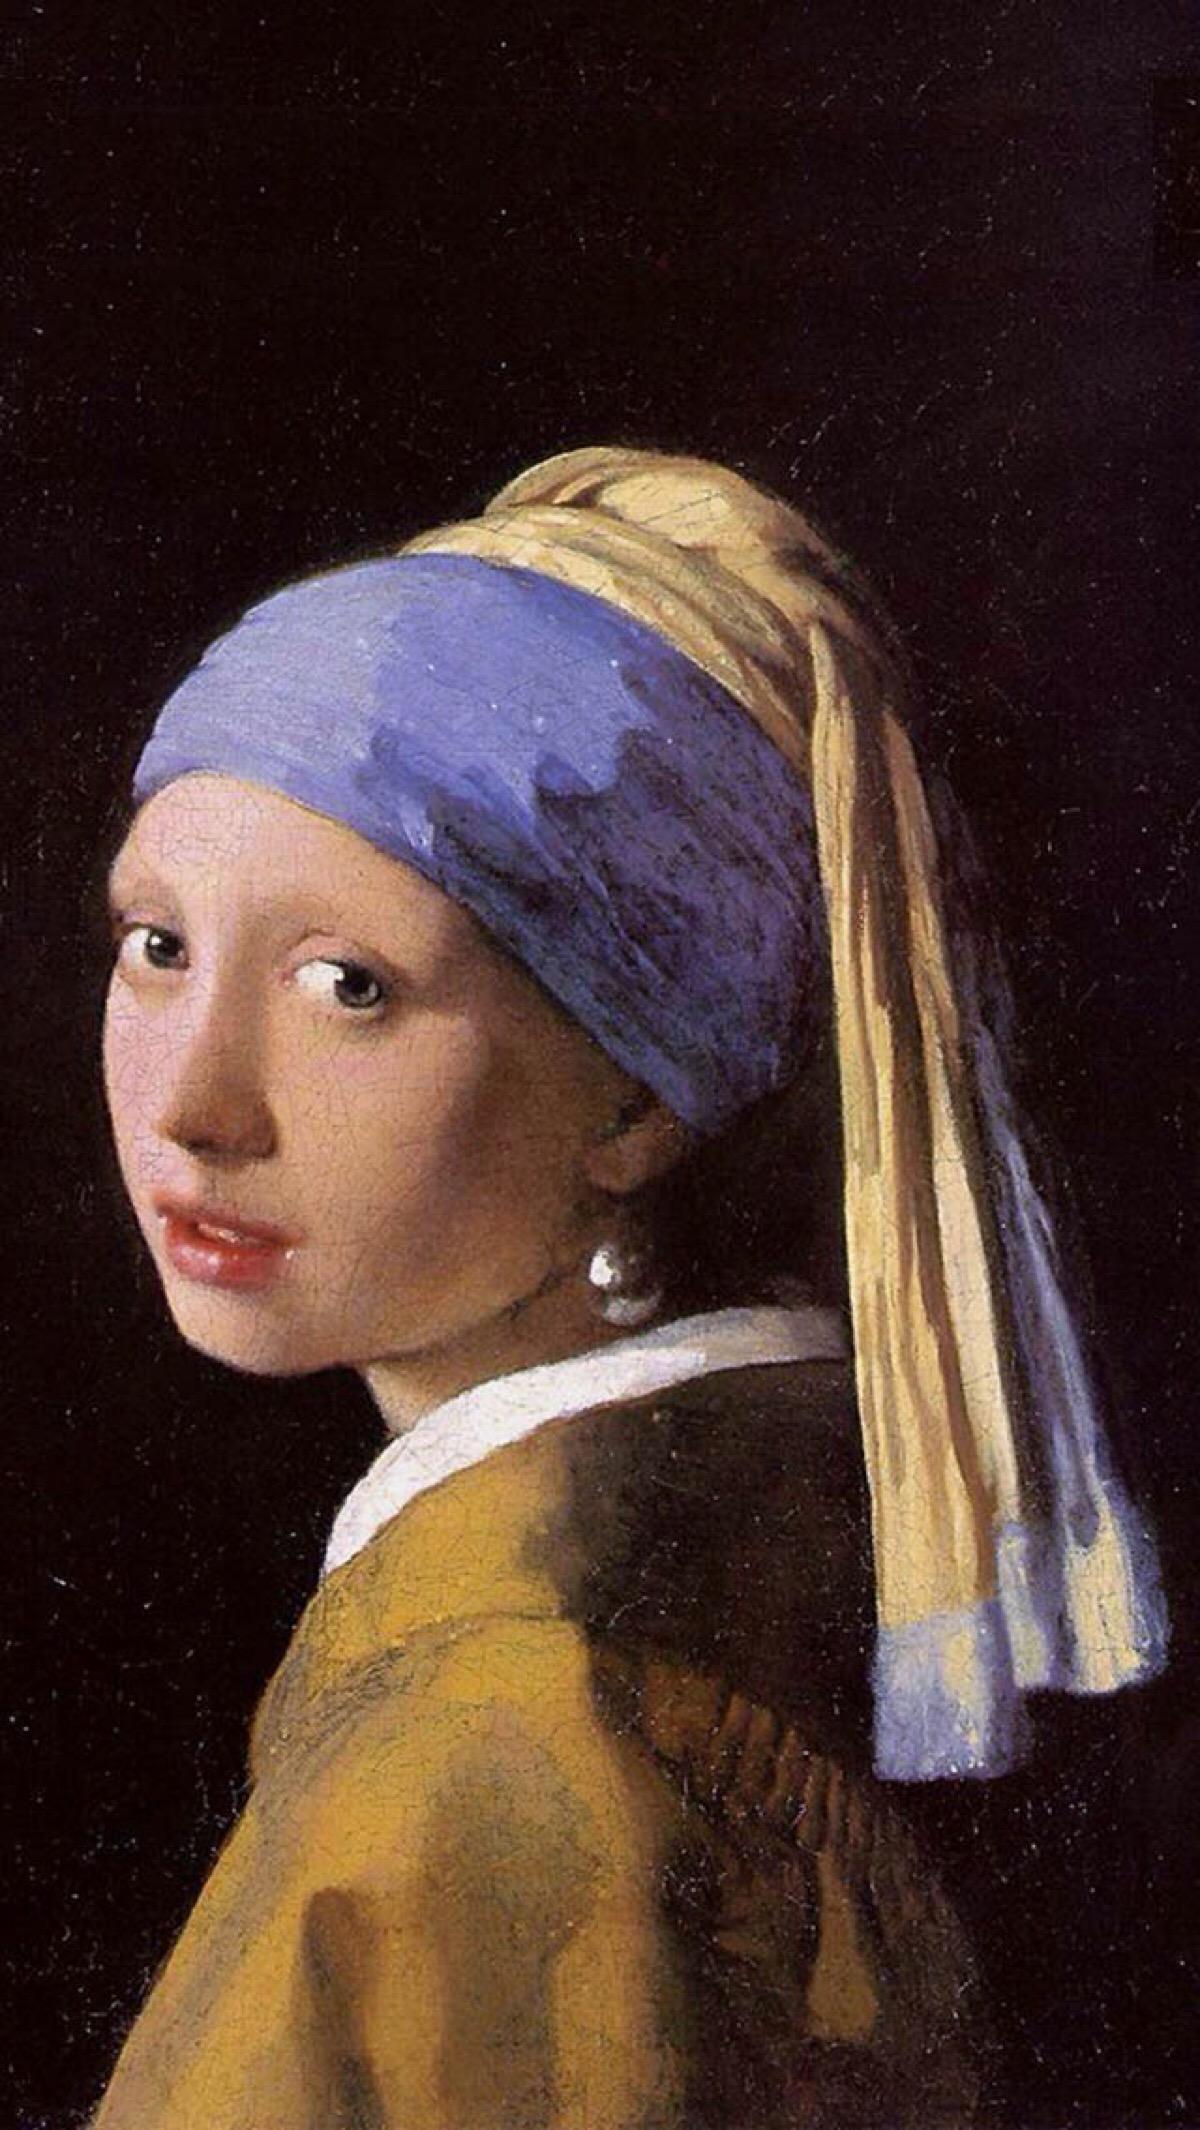 戴珍珠耳环的少女,维梅尔的代表作,达芬奇画的是什么样的呢,我没见过